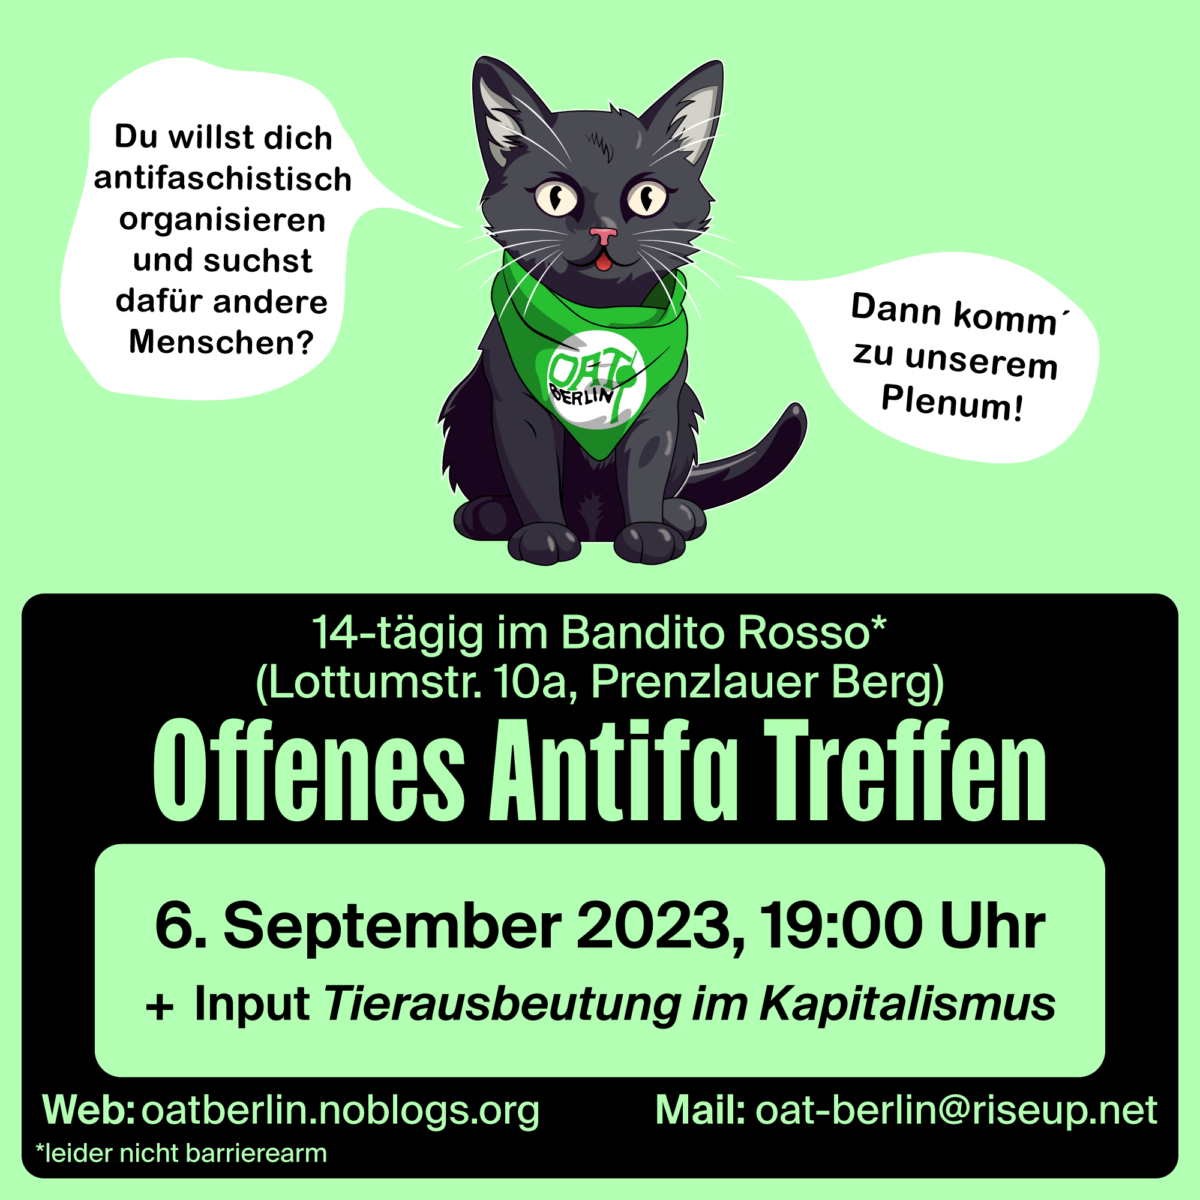 Offenes Antifa Treffen Berlin am 6. September 2023 um 19 Uhr